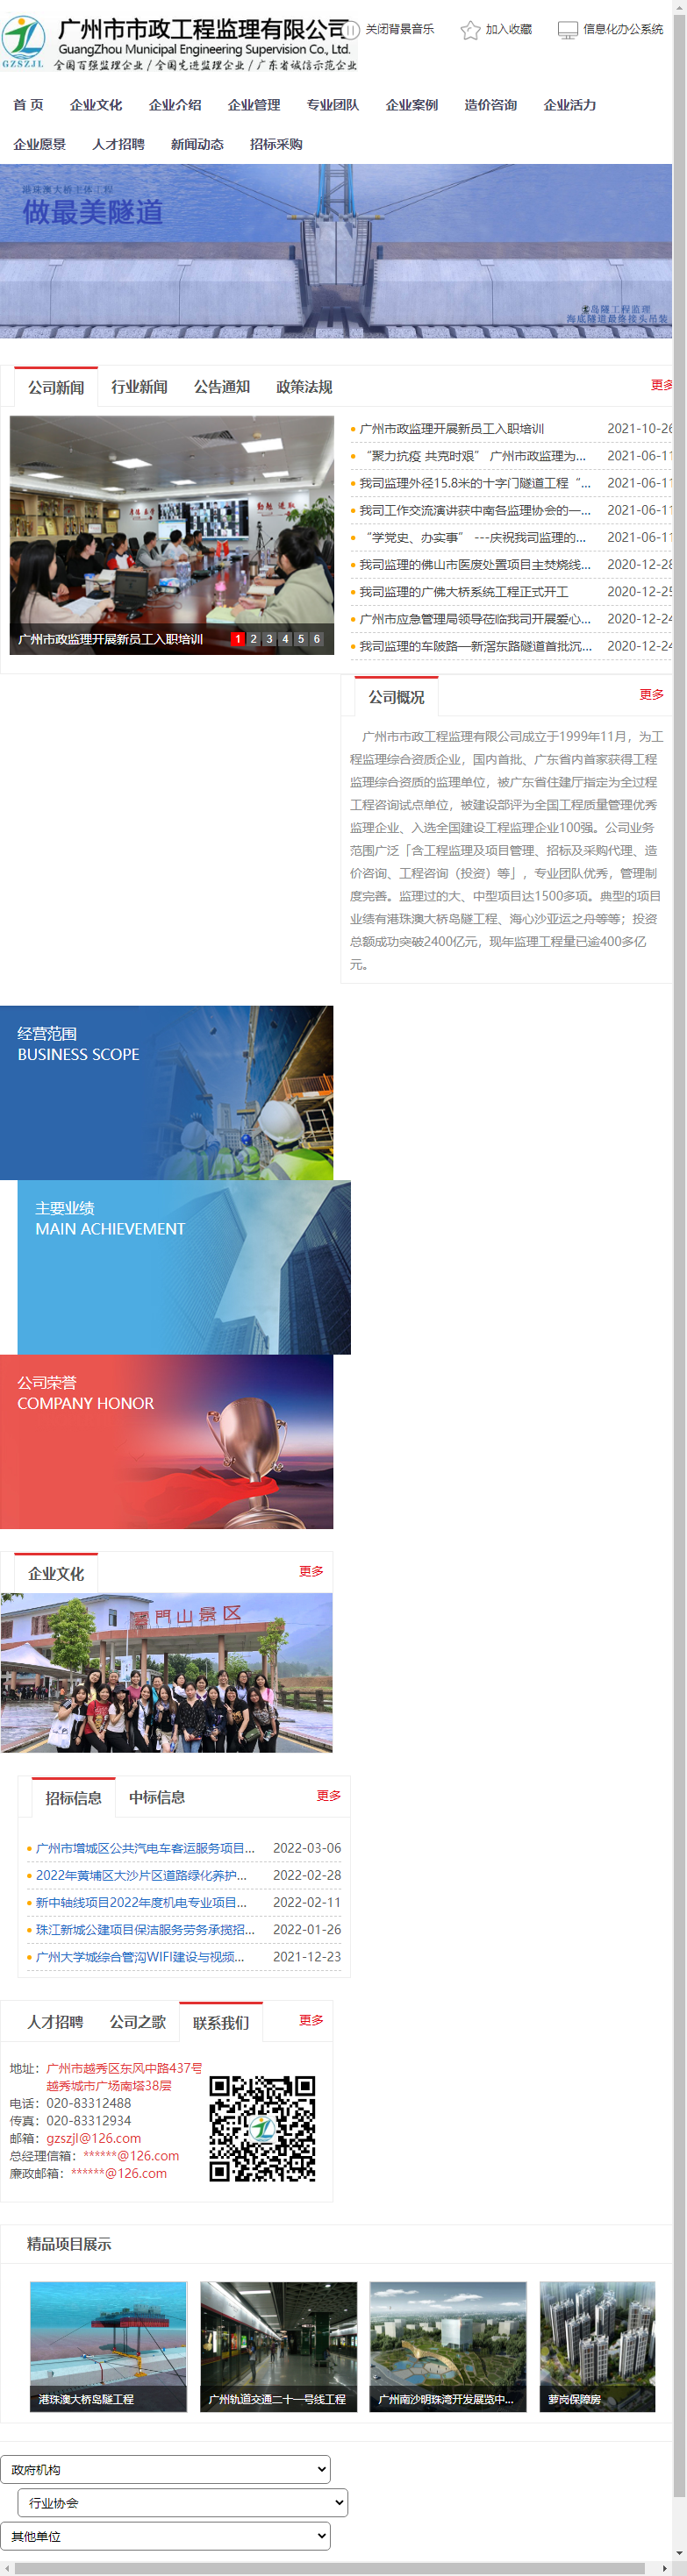 广州市市政工程监理有限公司网站案例